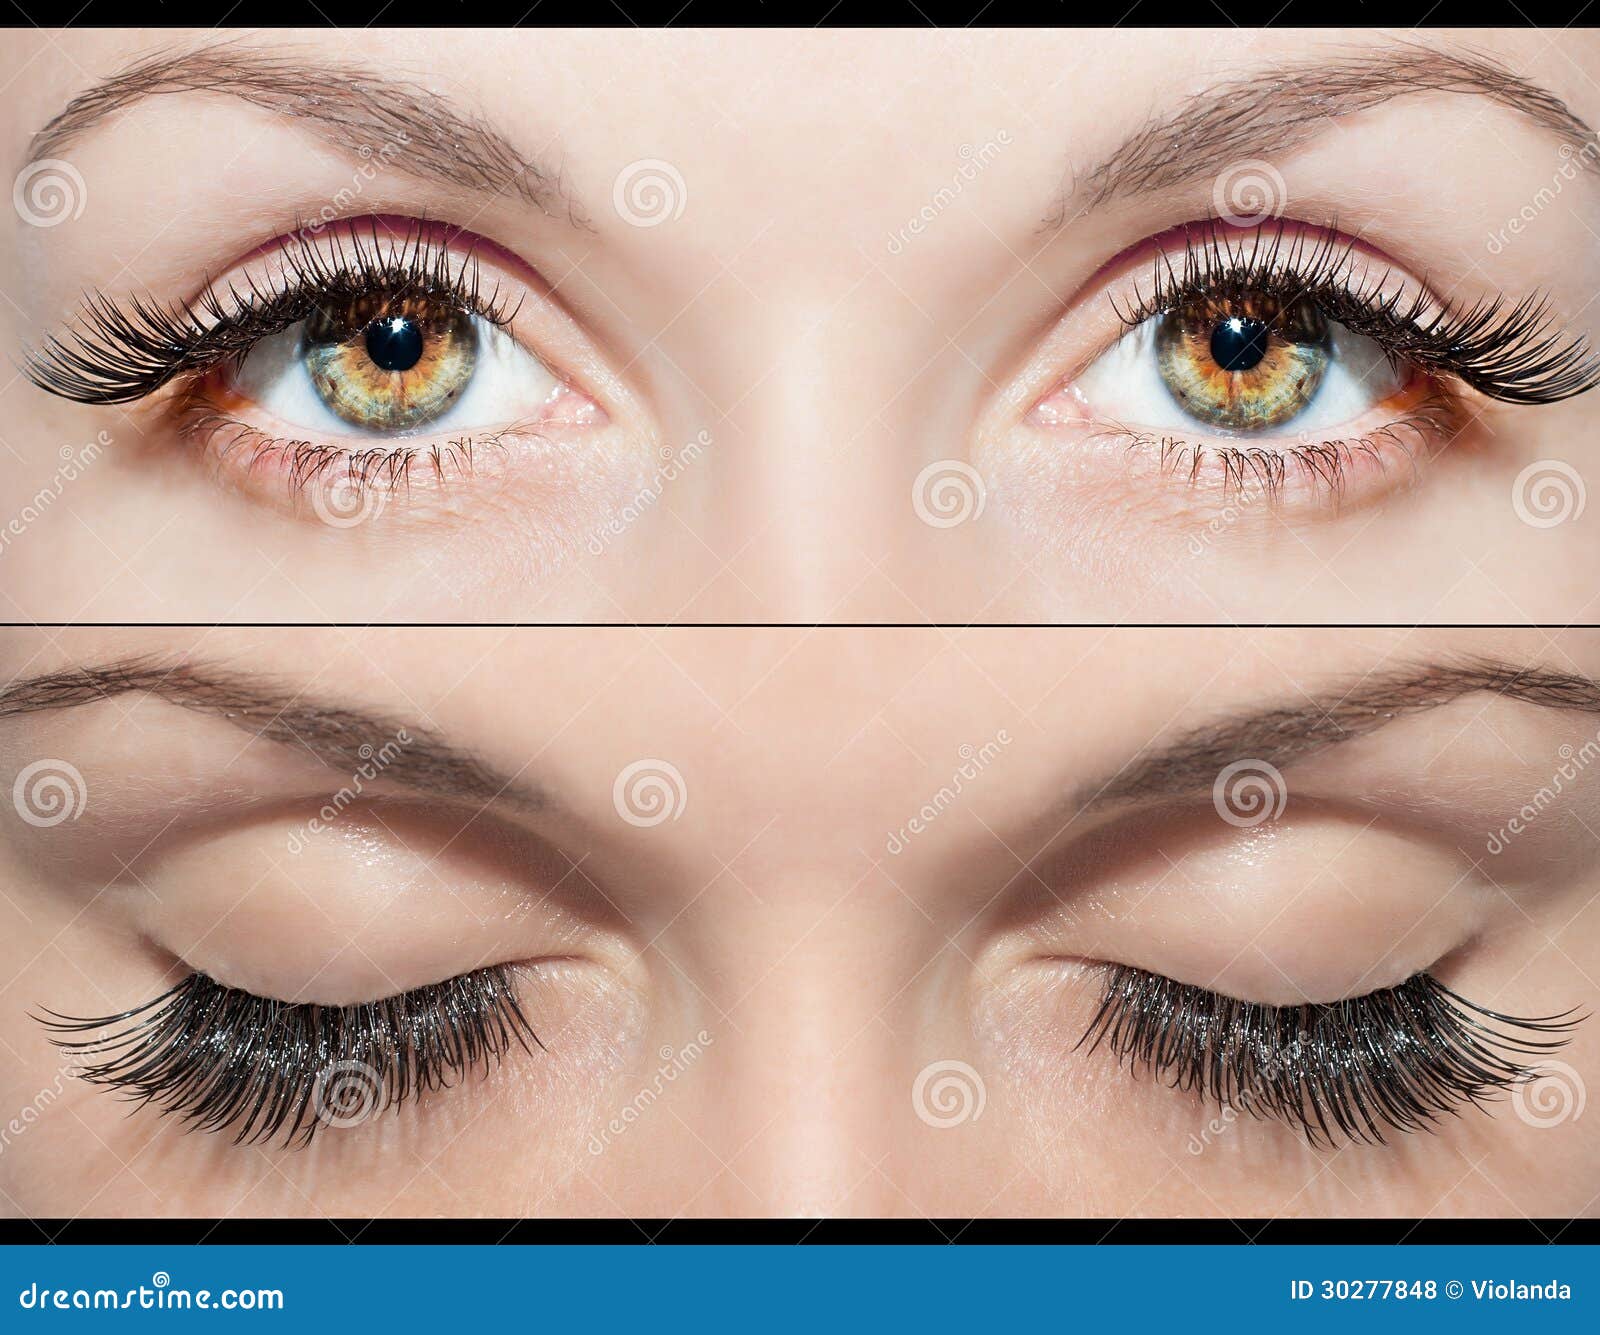 eye and false eyelashes